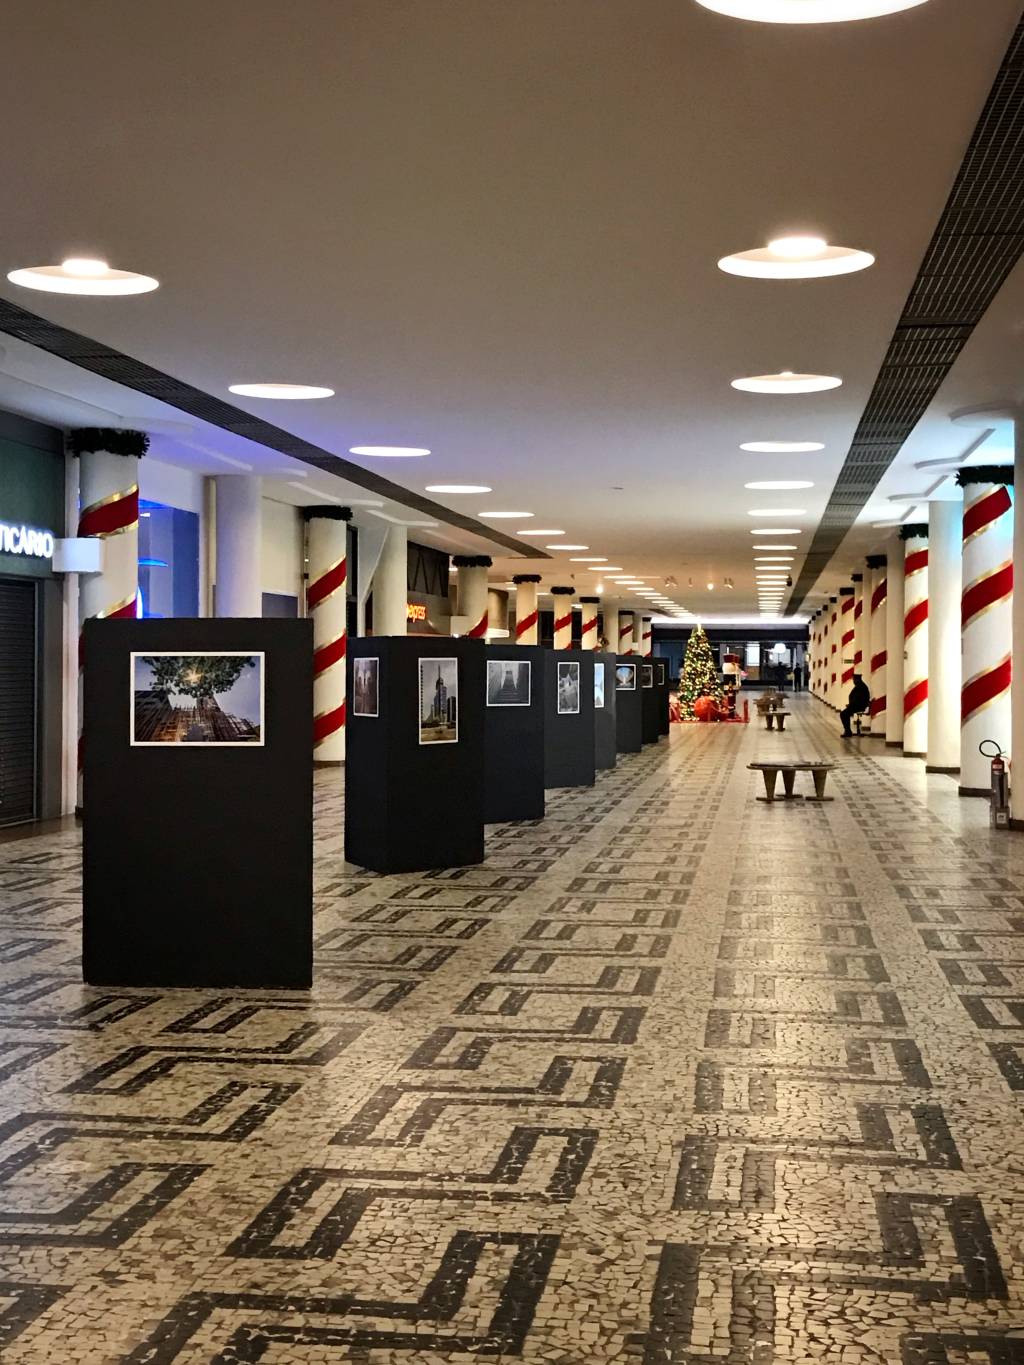 Imagem mostra corredor com painéis pretos com imagens coladas.